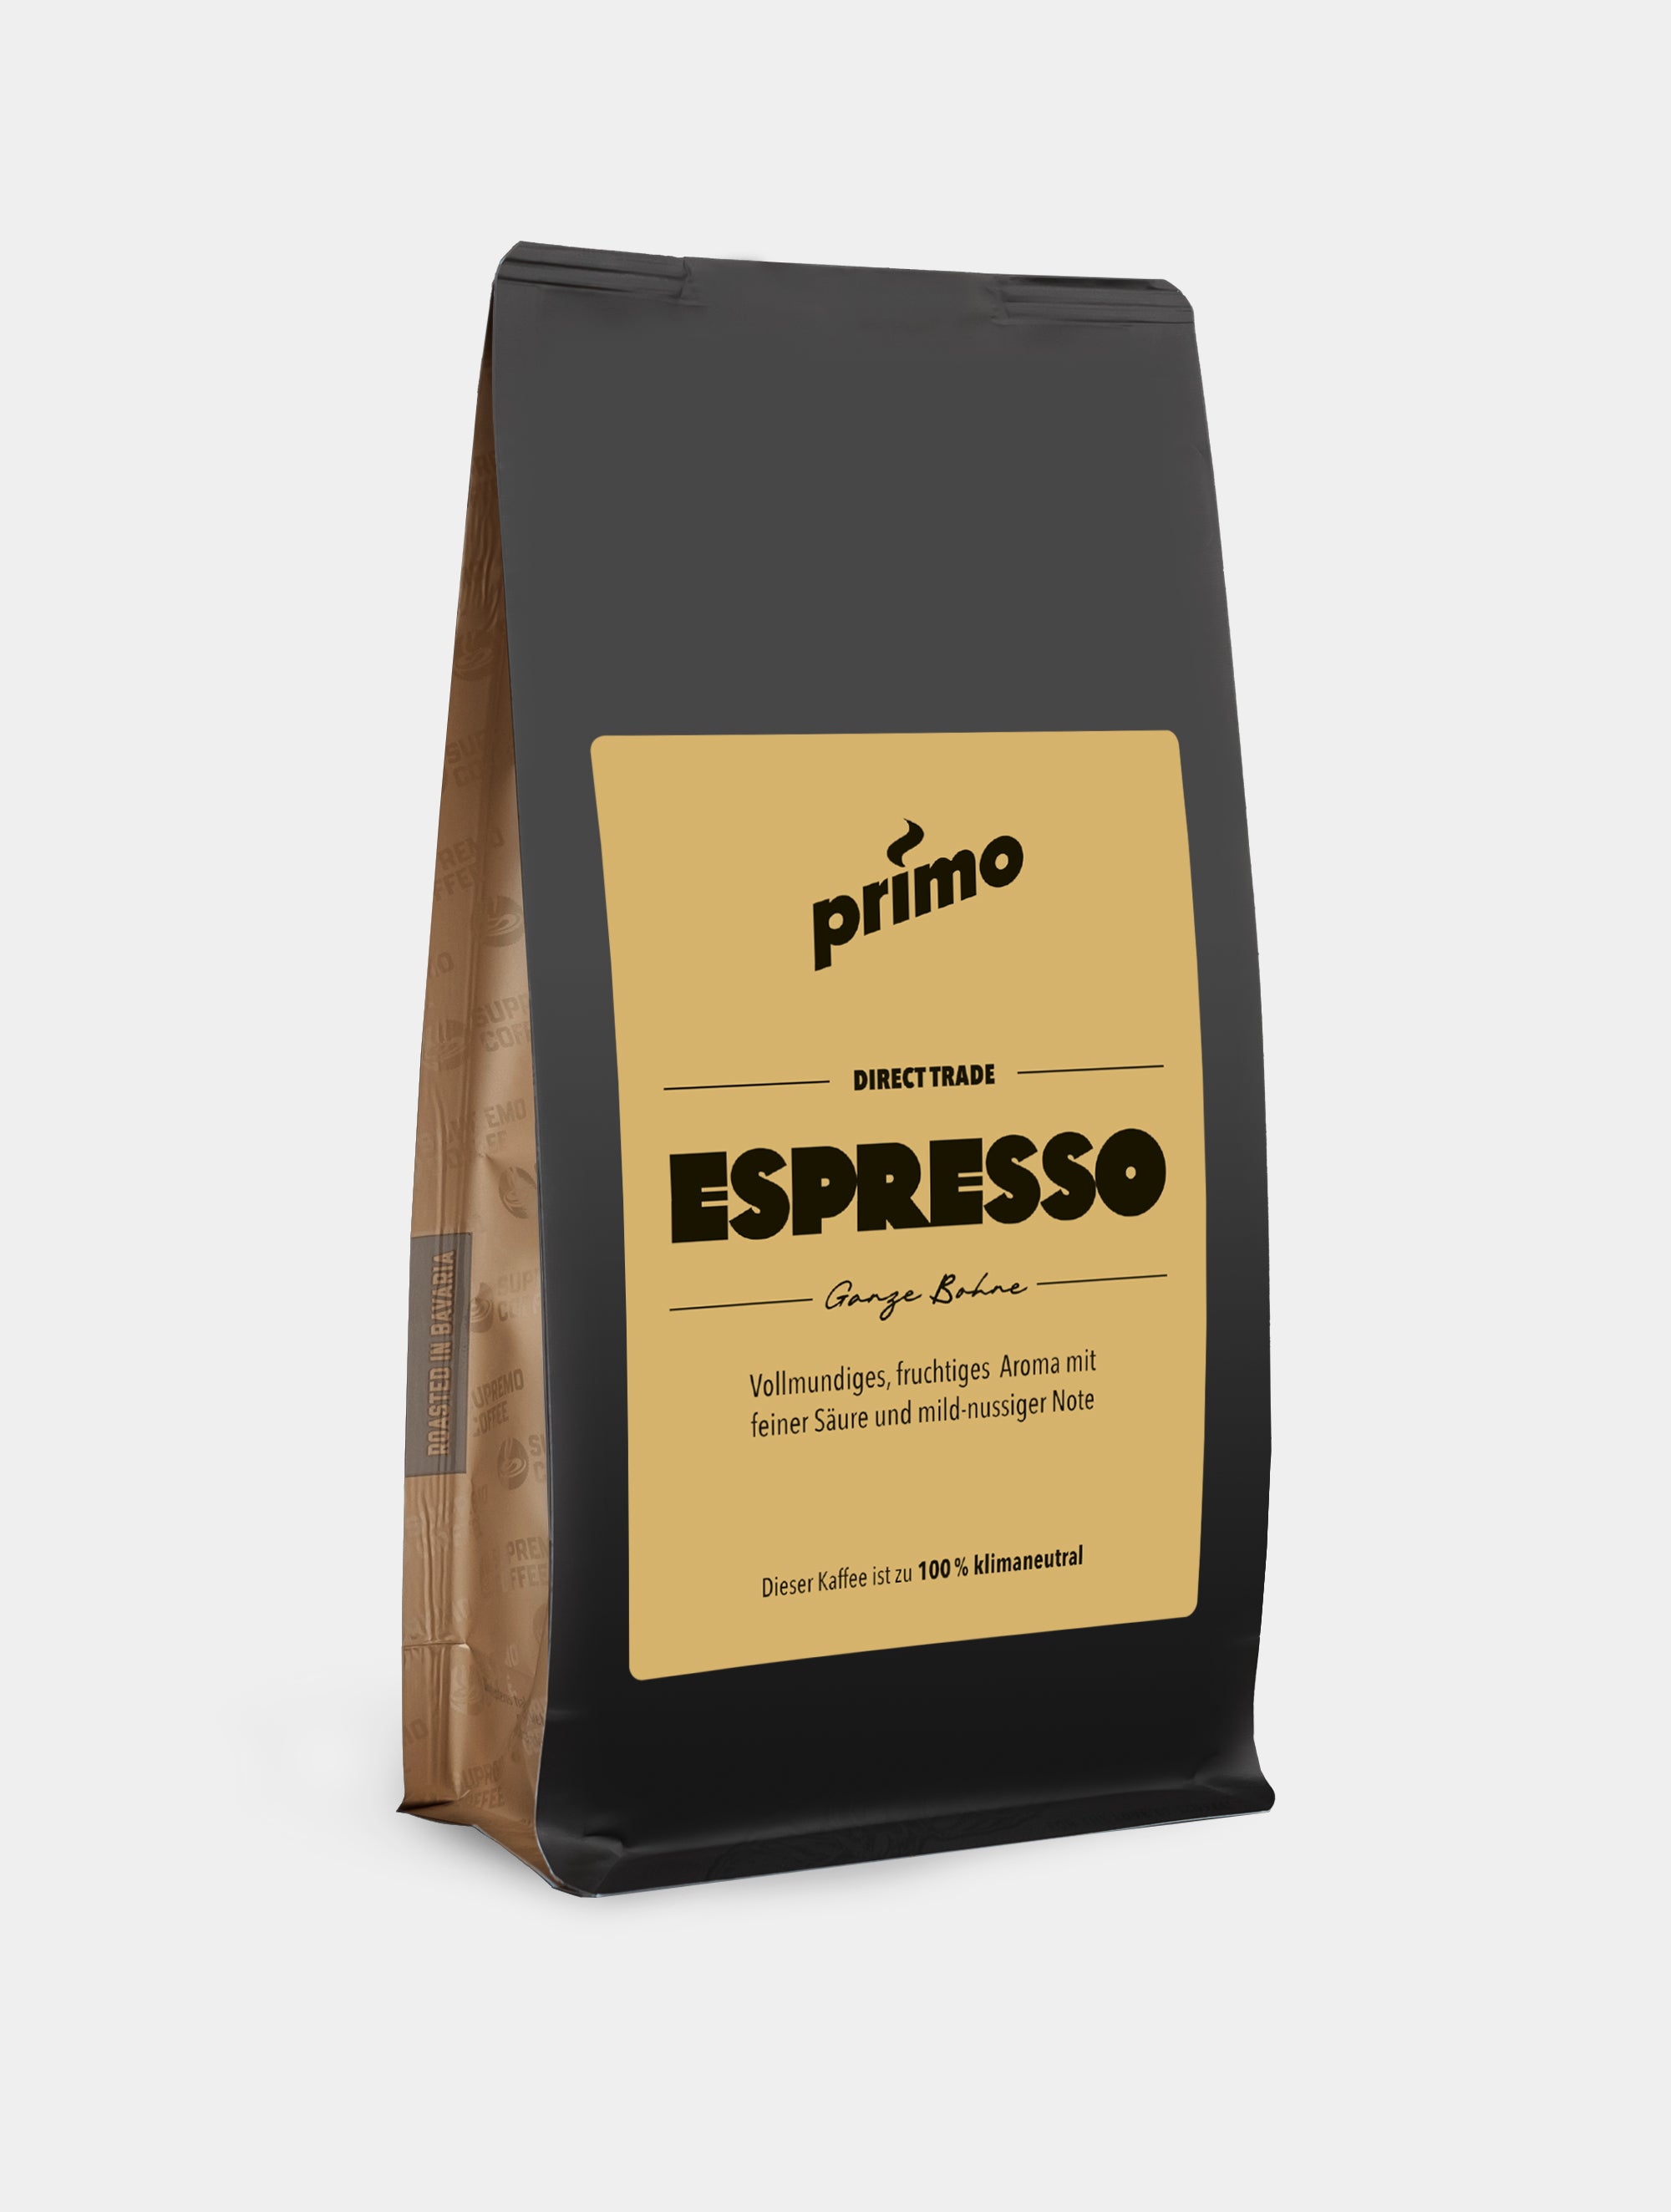 PRIMO Espresso: Produktbild schräg